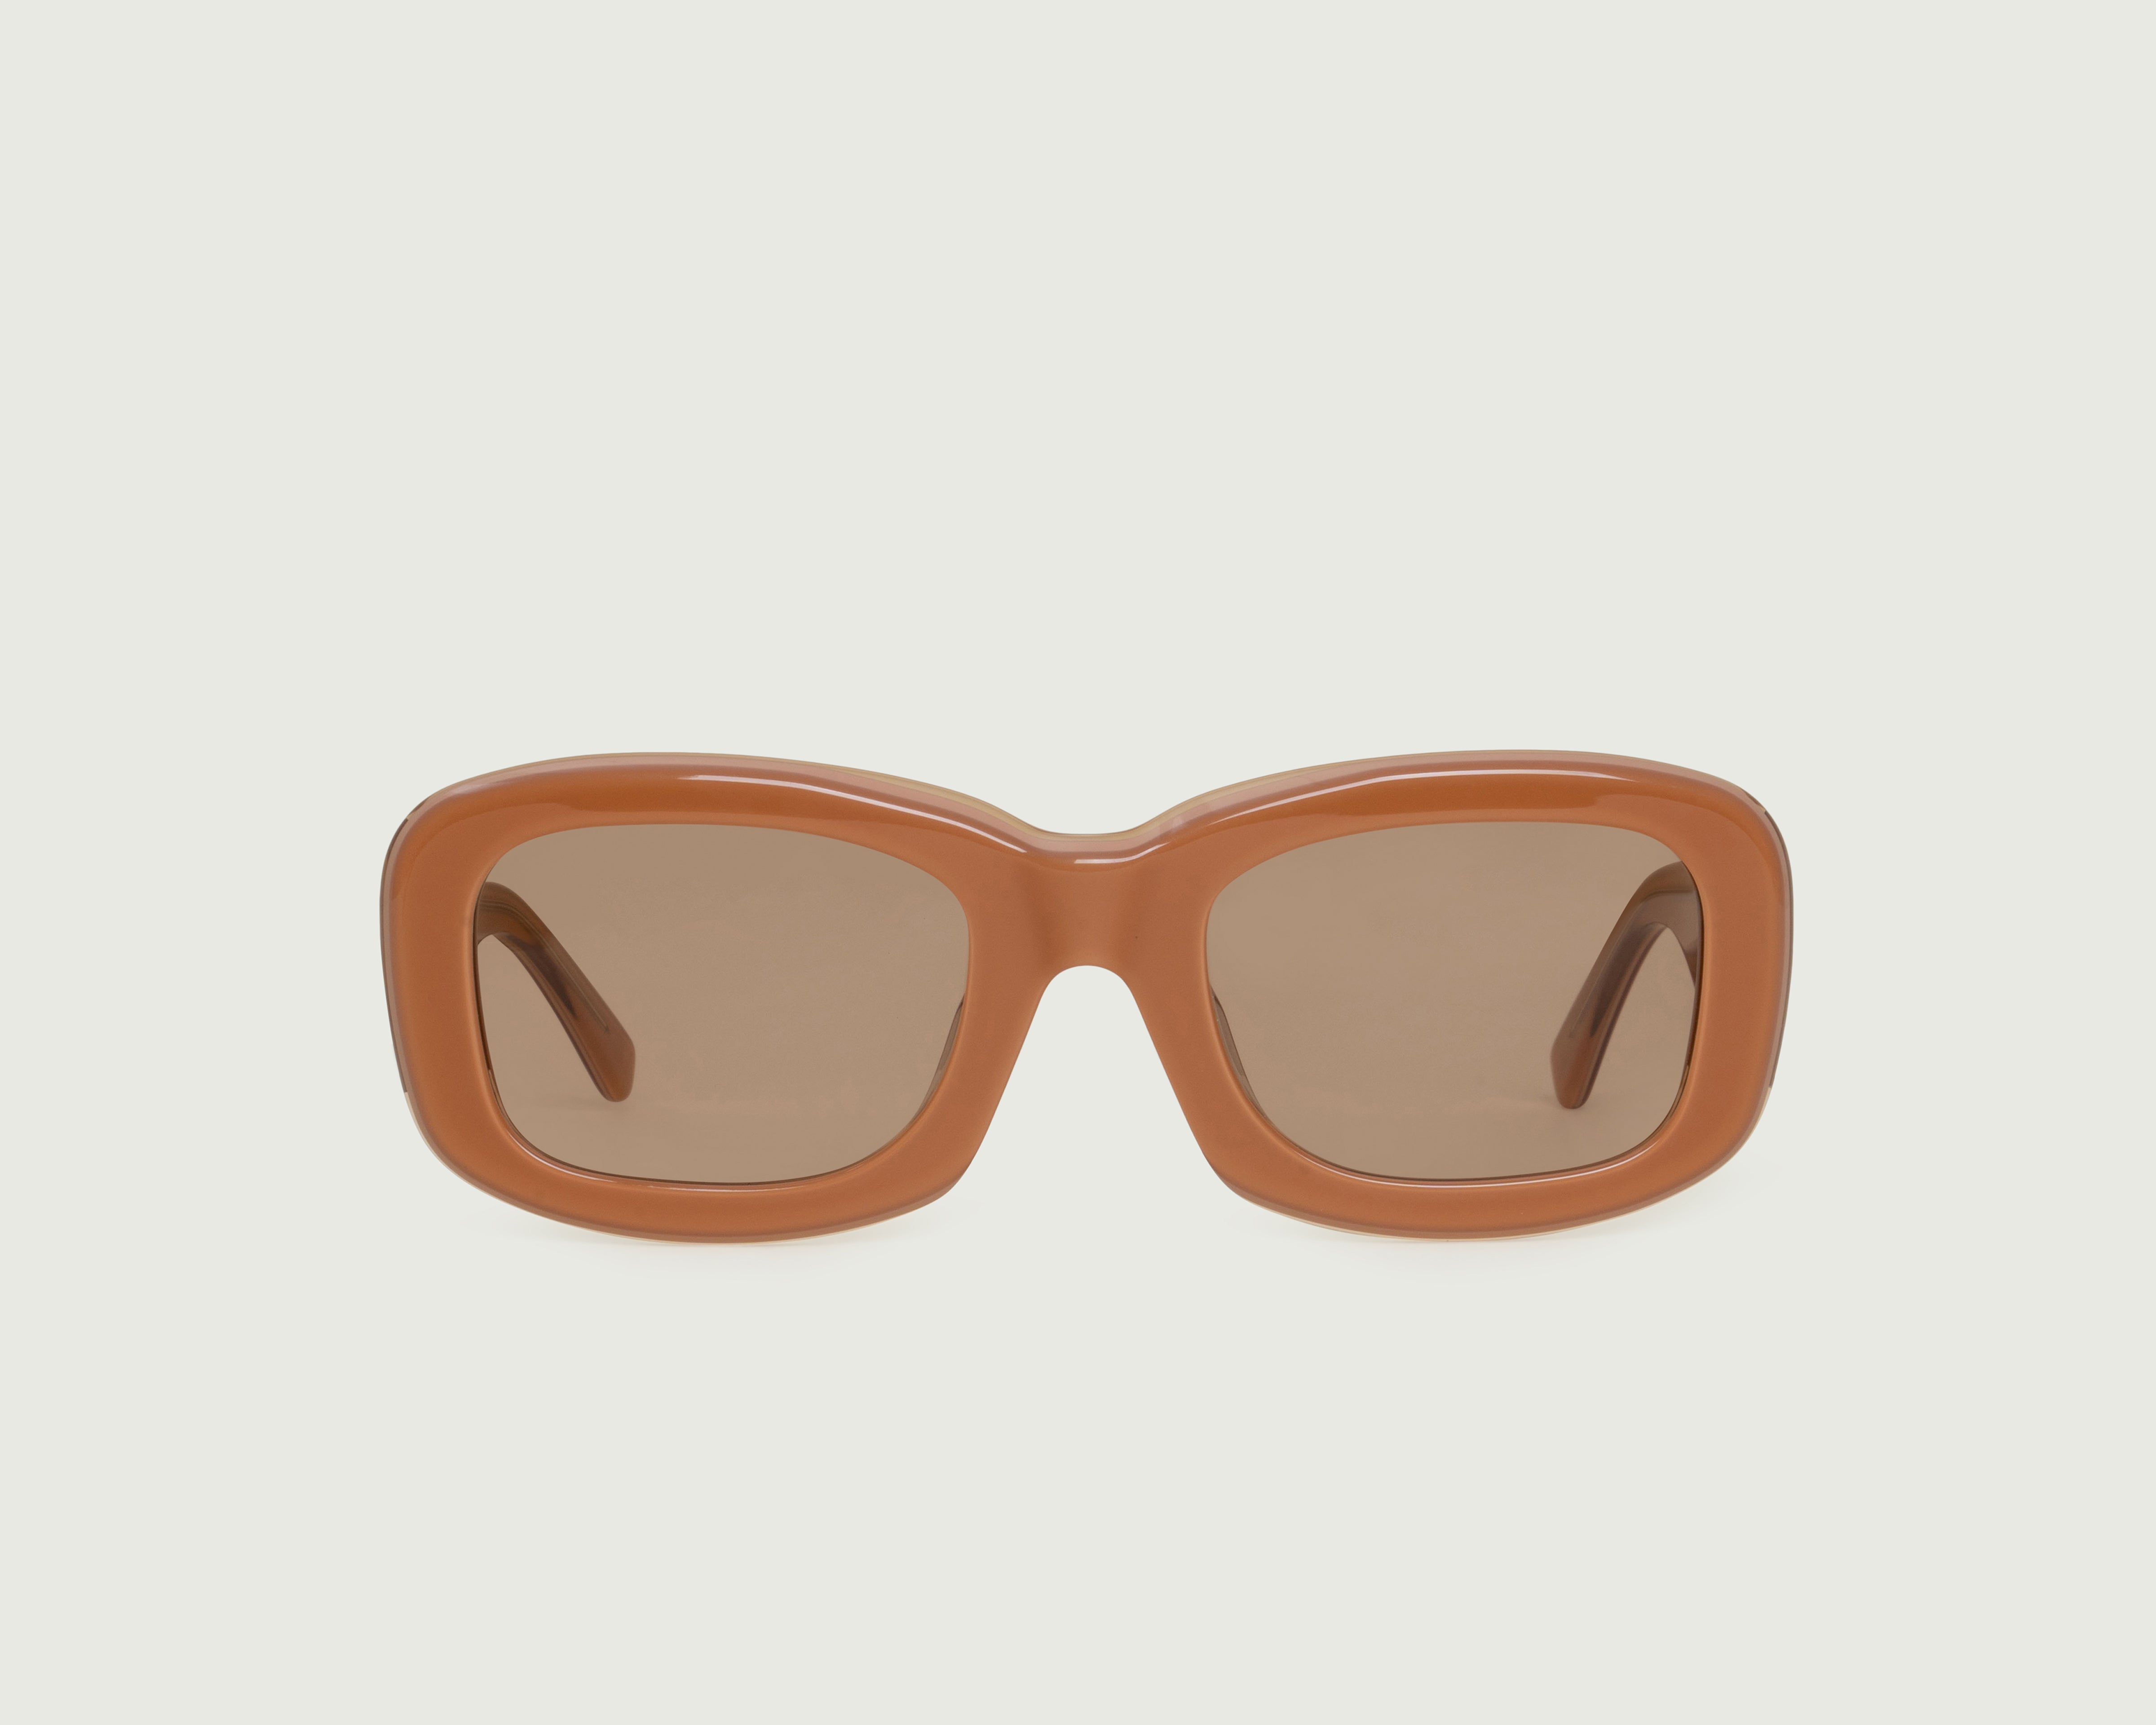 Suede::Liv Sunglasses square orange acetate front